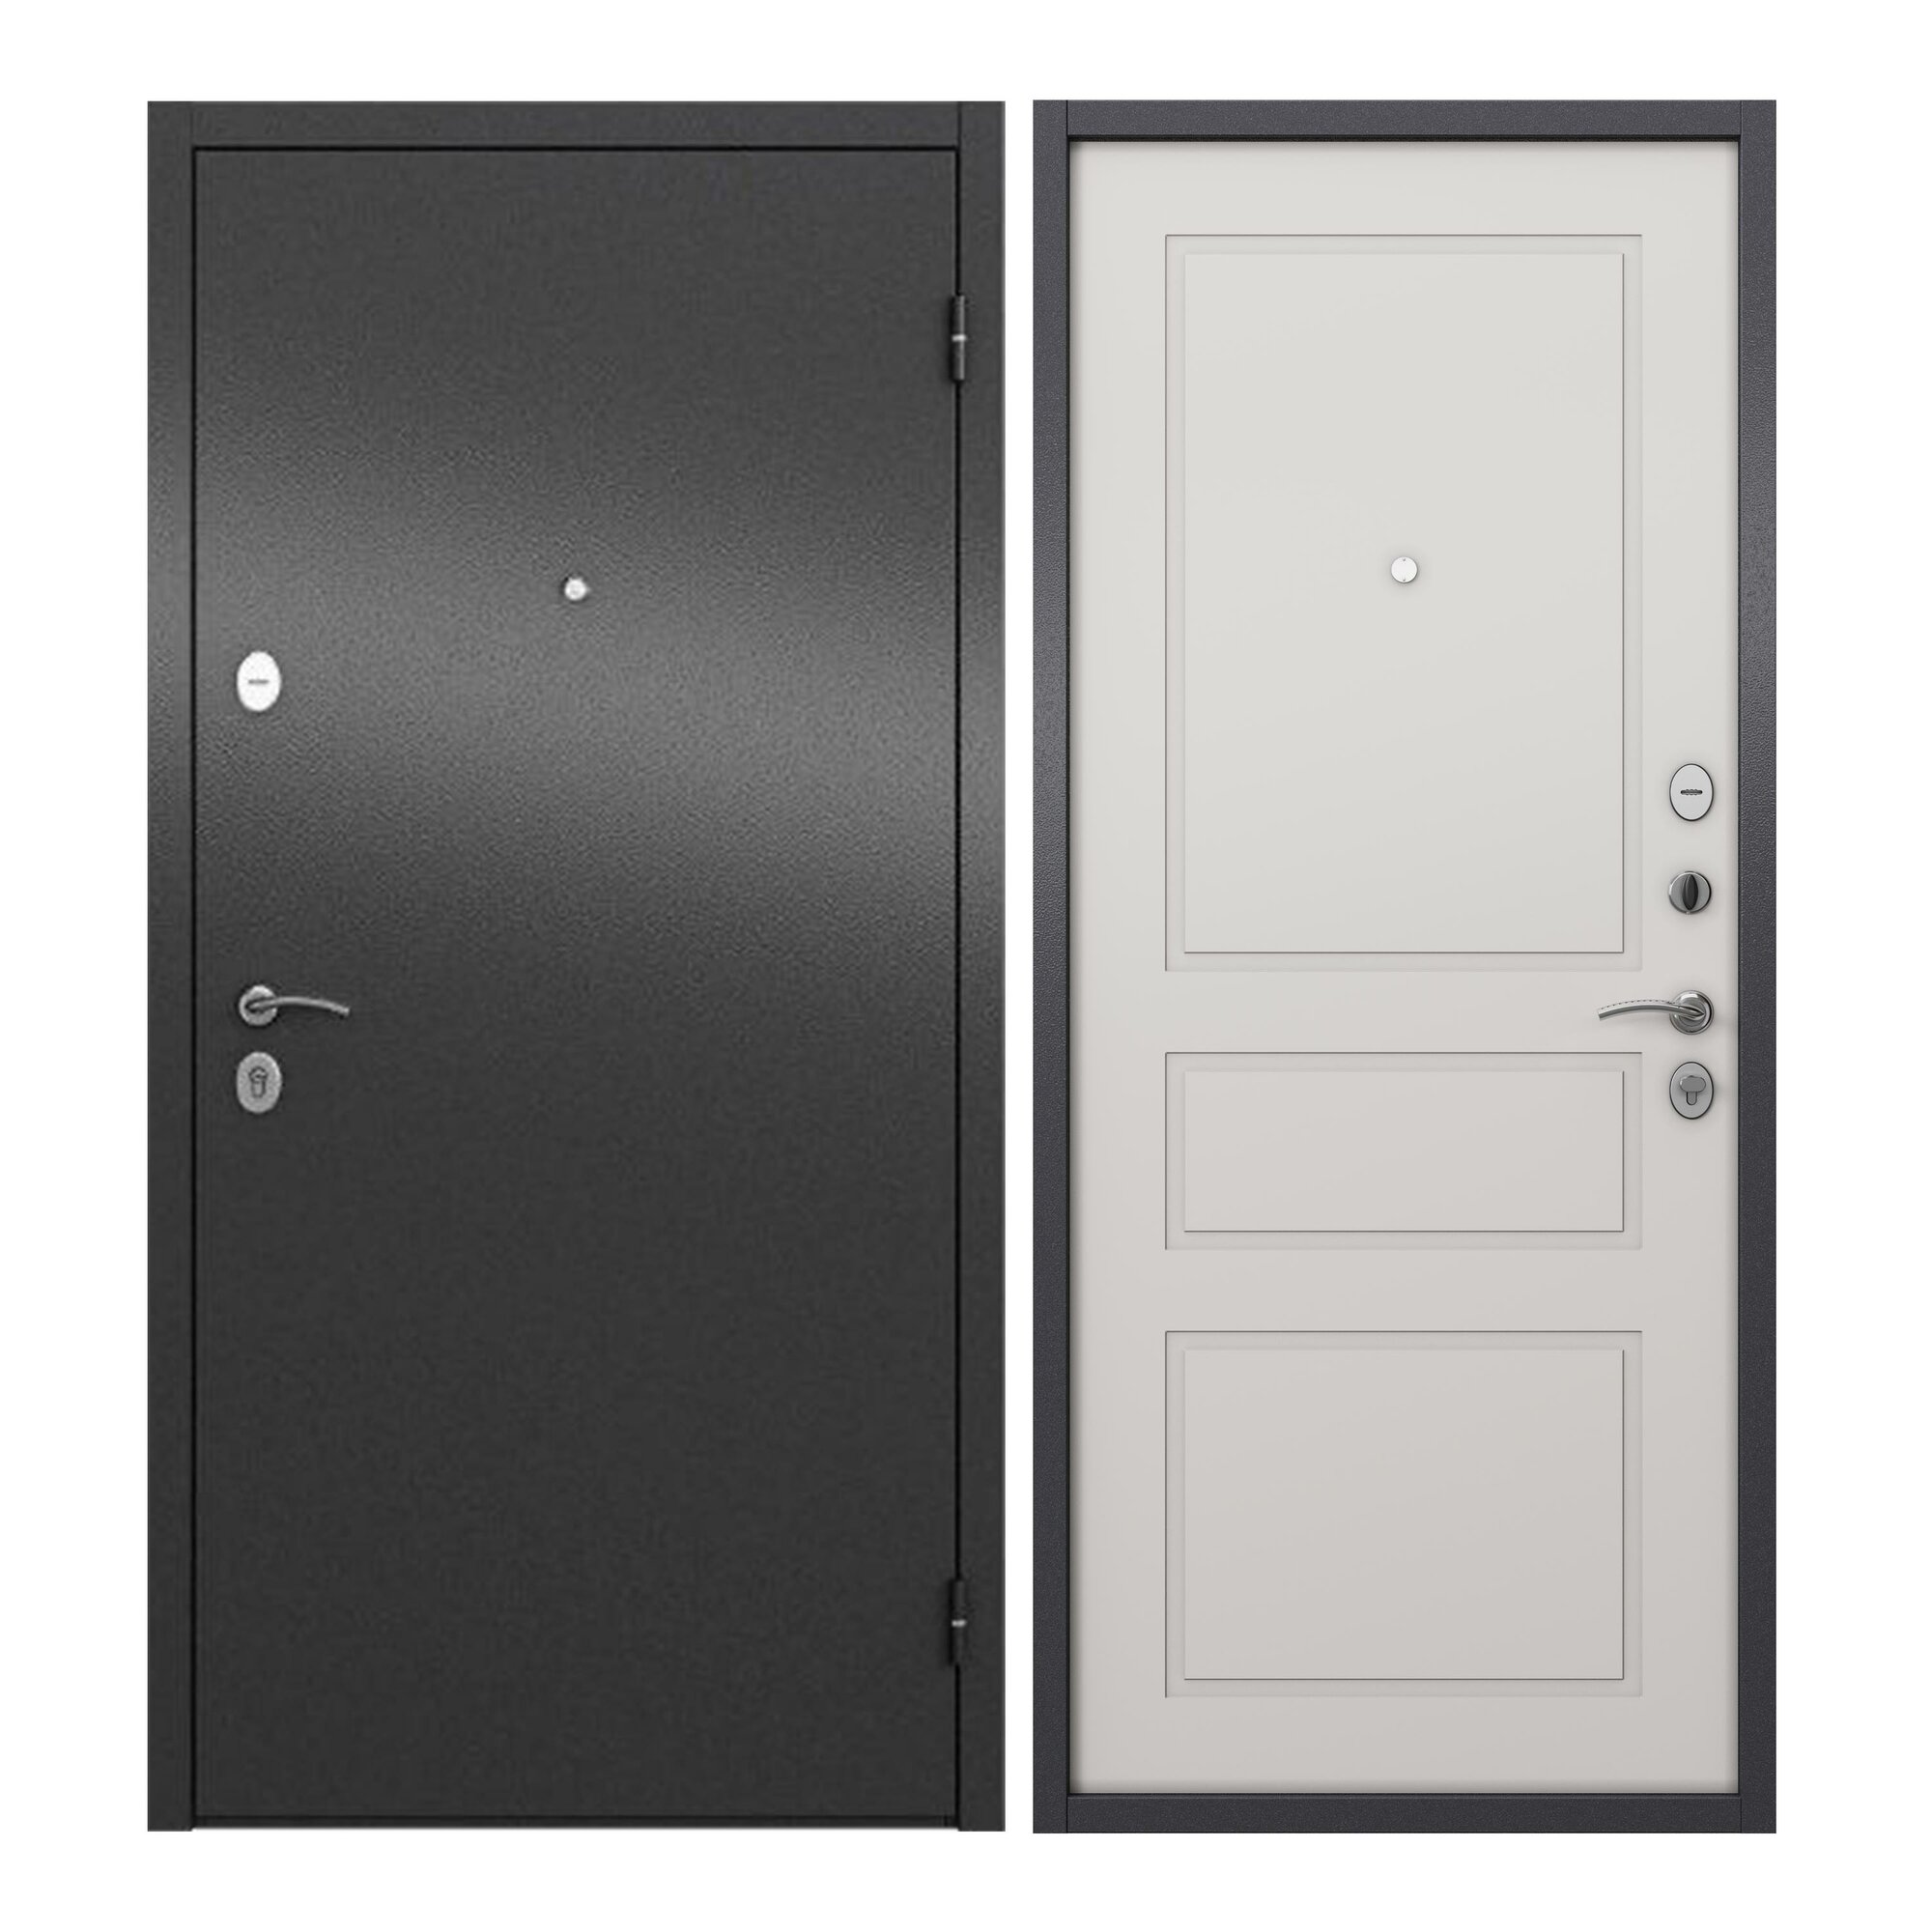 Дверь входная для квартиры ProLine металлическая Apartment 860х2050 левая антивандальное покрытие два уплотнителя замки 4го и 2го класса серый